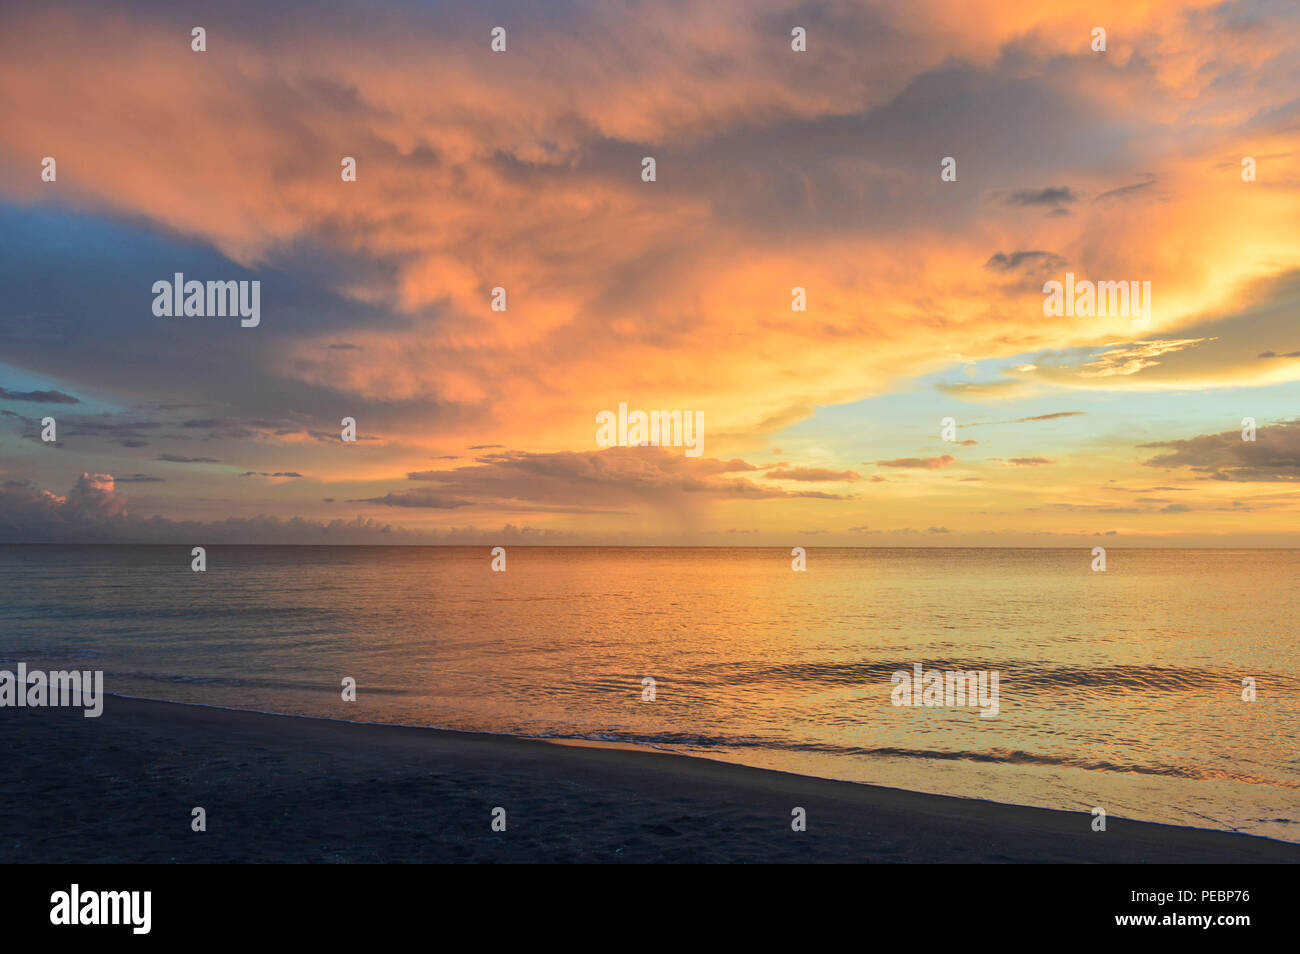 Landschaftsfotografie Panorama Dämmerung tropischen Küste Insel Sonnenuntergang Sand Ruhe ruhige Wasser Landschaft Surfen Meer Ruhe Golf von Mexiko Sanibel Florida Stockfoto